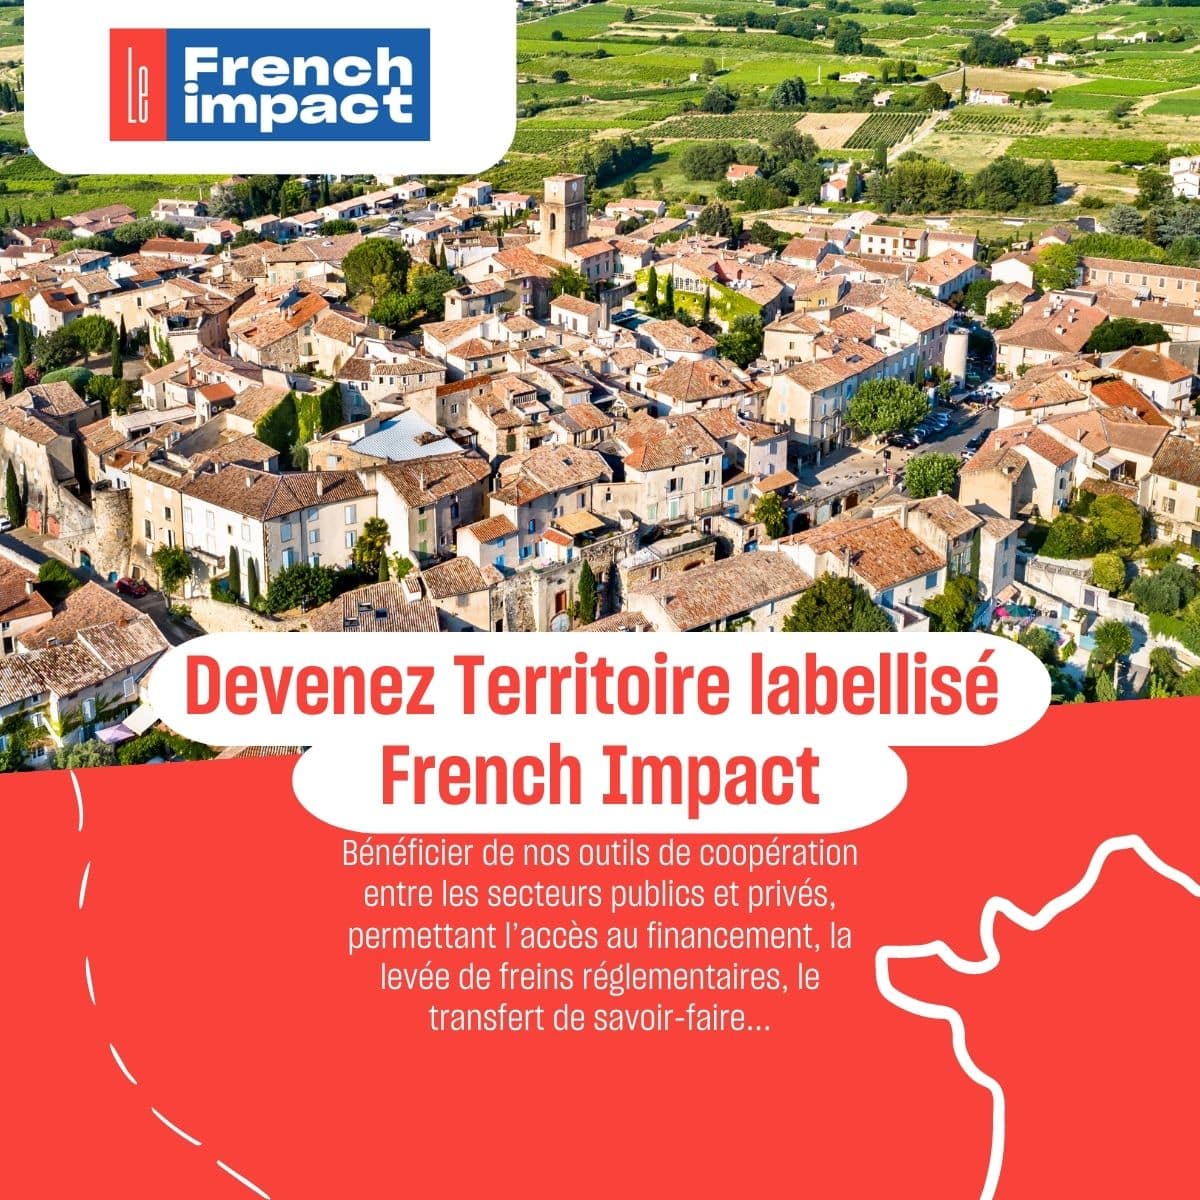 Devenez Territoire labellisé French Impact